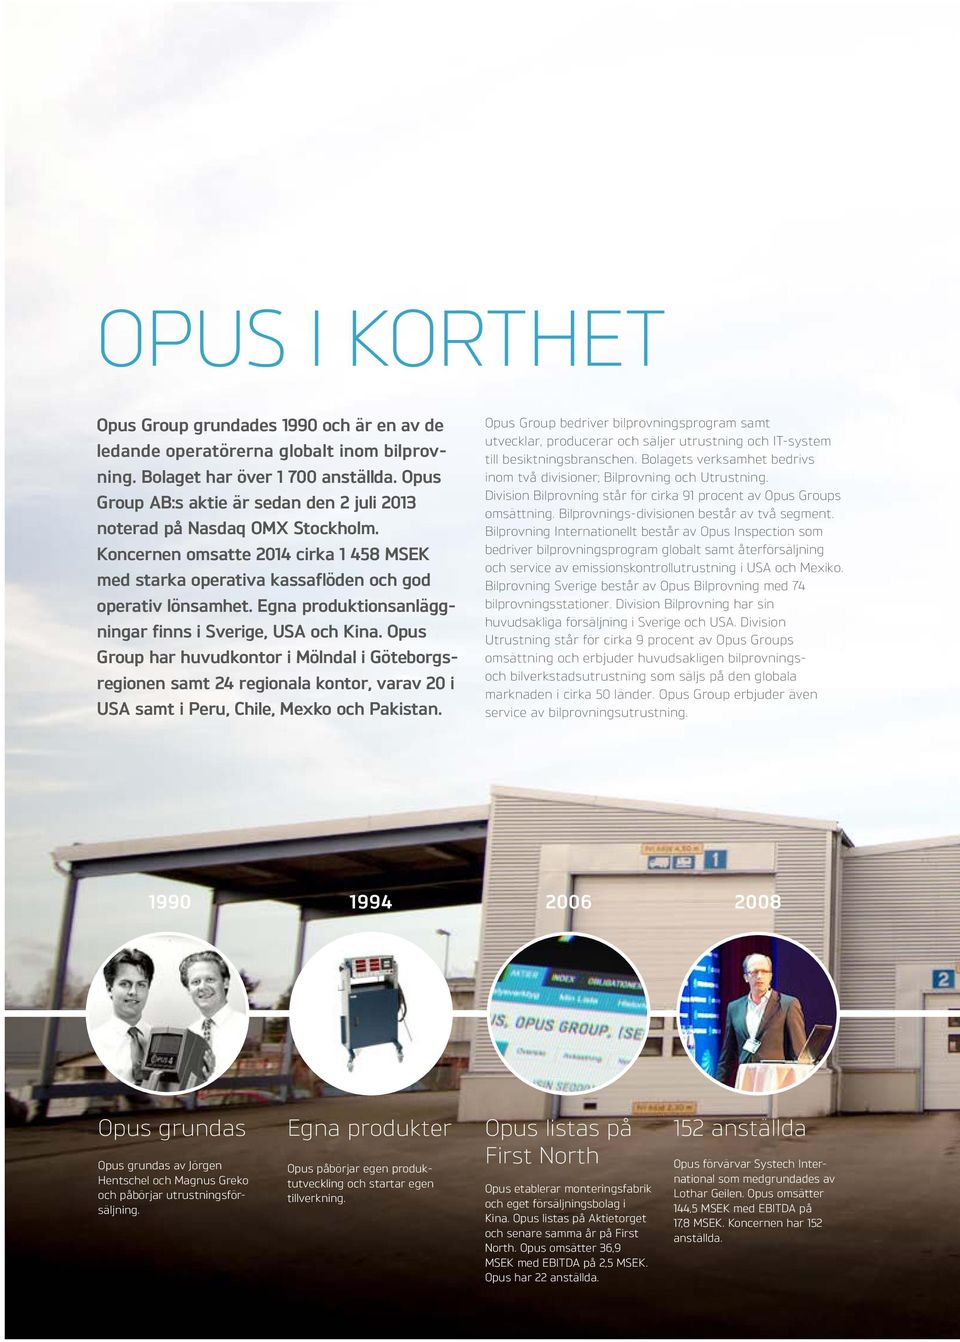 Egna produktionsanläggningar finns i Sverige, USA och Kina. Opus Group har huvudkontor i Mölndal i Göteborgsregionen samt 24 regionala kontor, varav 20 i USA samt i Peru, Chile, Mexko och Pakistan.